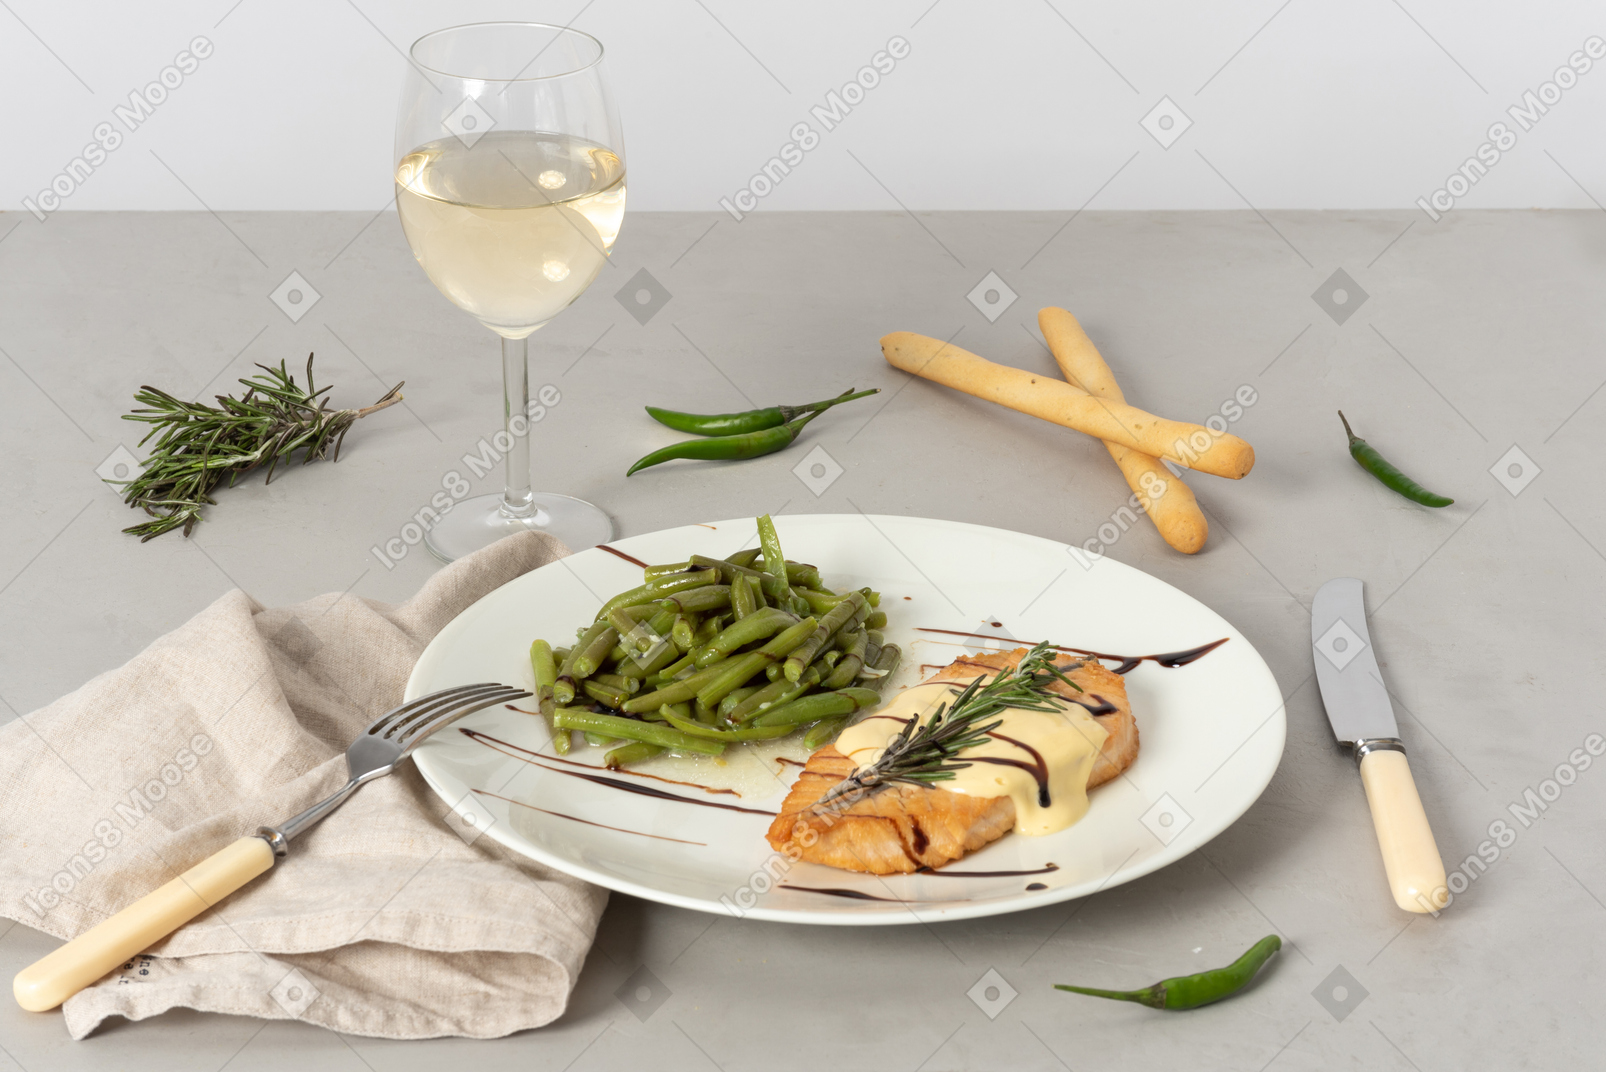 생선과 끈 콩 요리, 화이트 와인 한잔, 그리 시니, 포크와 나이프